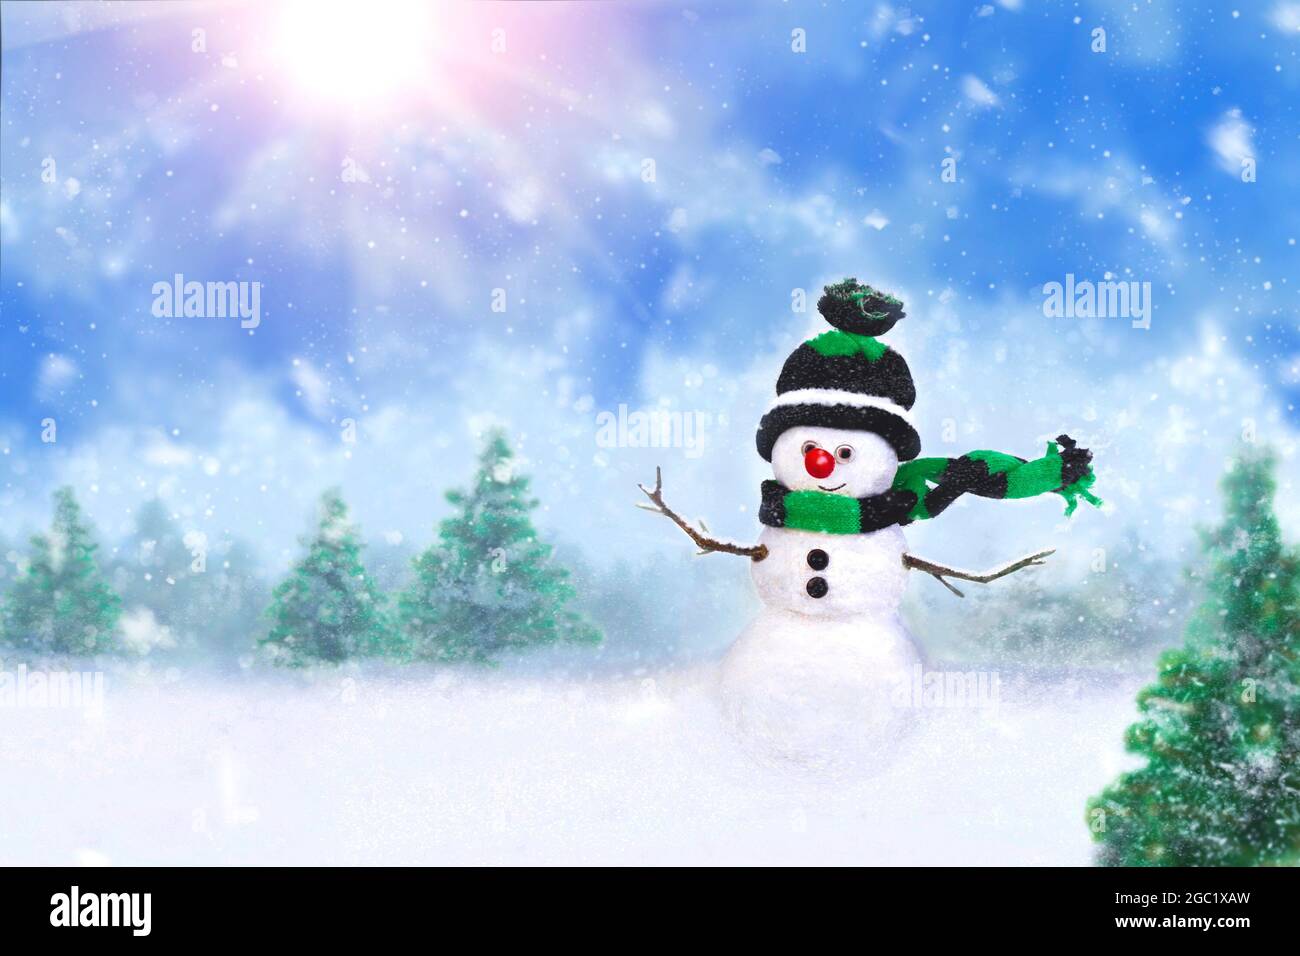 Frohe Weihnachten und Glückwünsche zum neuen Jahr. Lustige Schneemann in der Winterlandschaft Wald zwischen den Bäumen und Schnee driftet, während eines Schneefalls. Sno Stockfoto